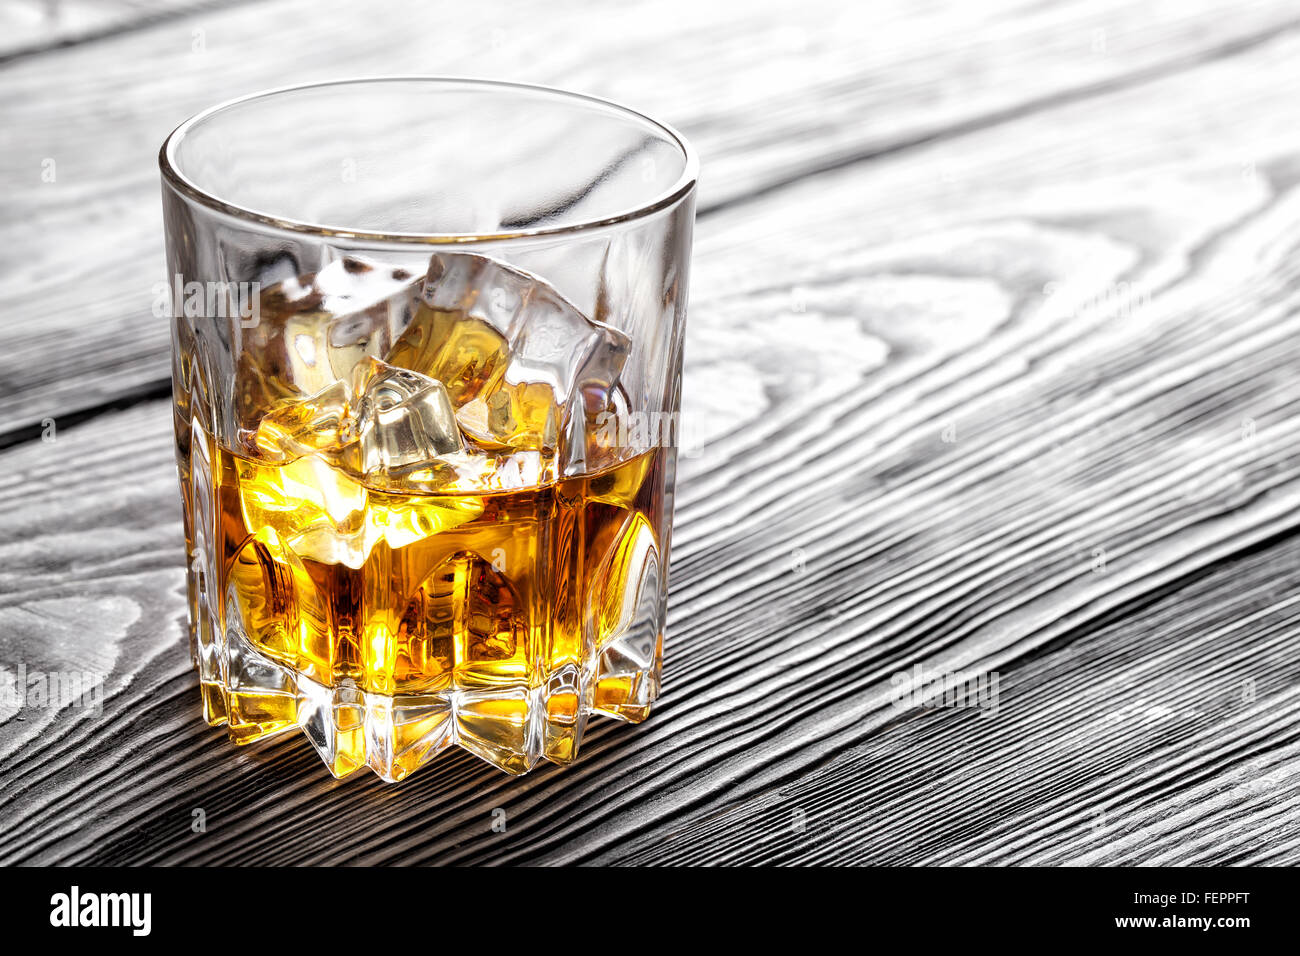 Vaso de whisky con hielo en la superficie de madera Fotografía de stock -  Alamy